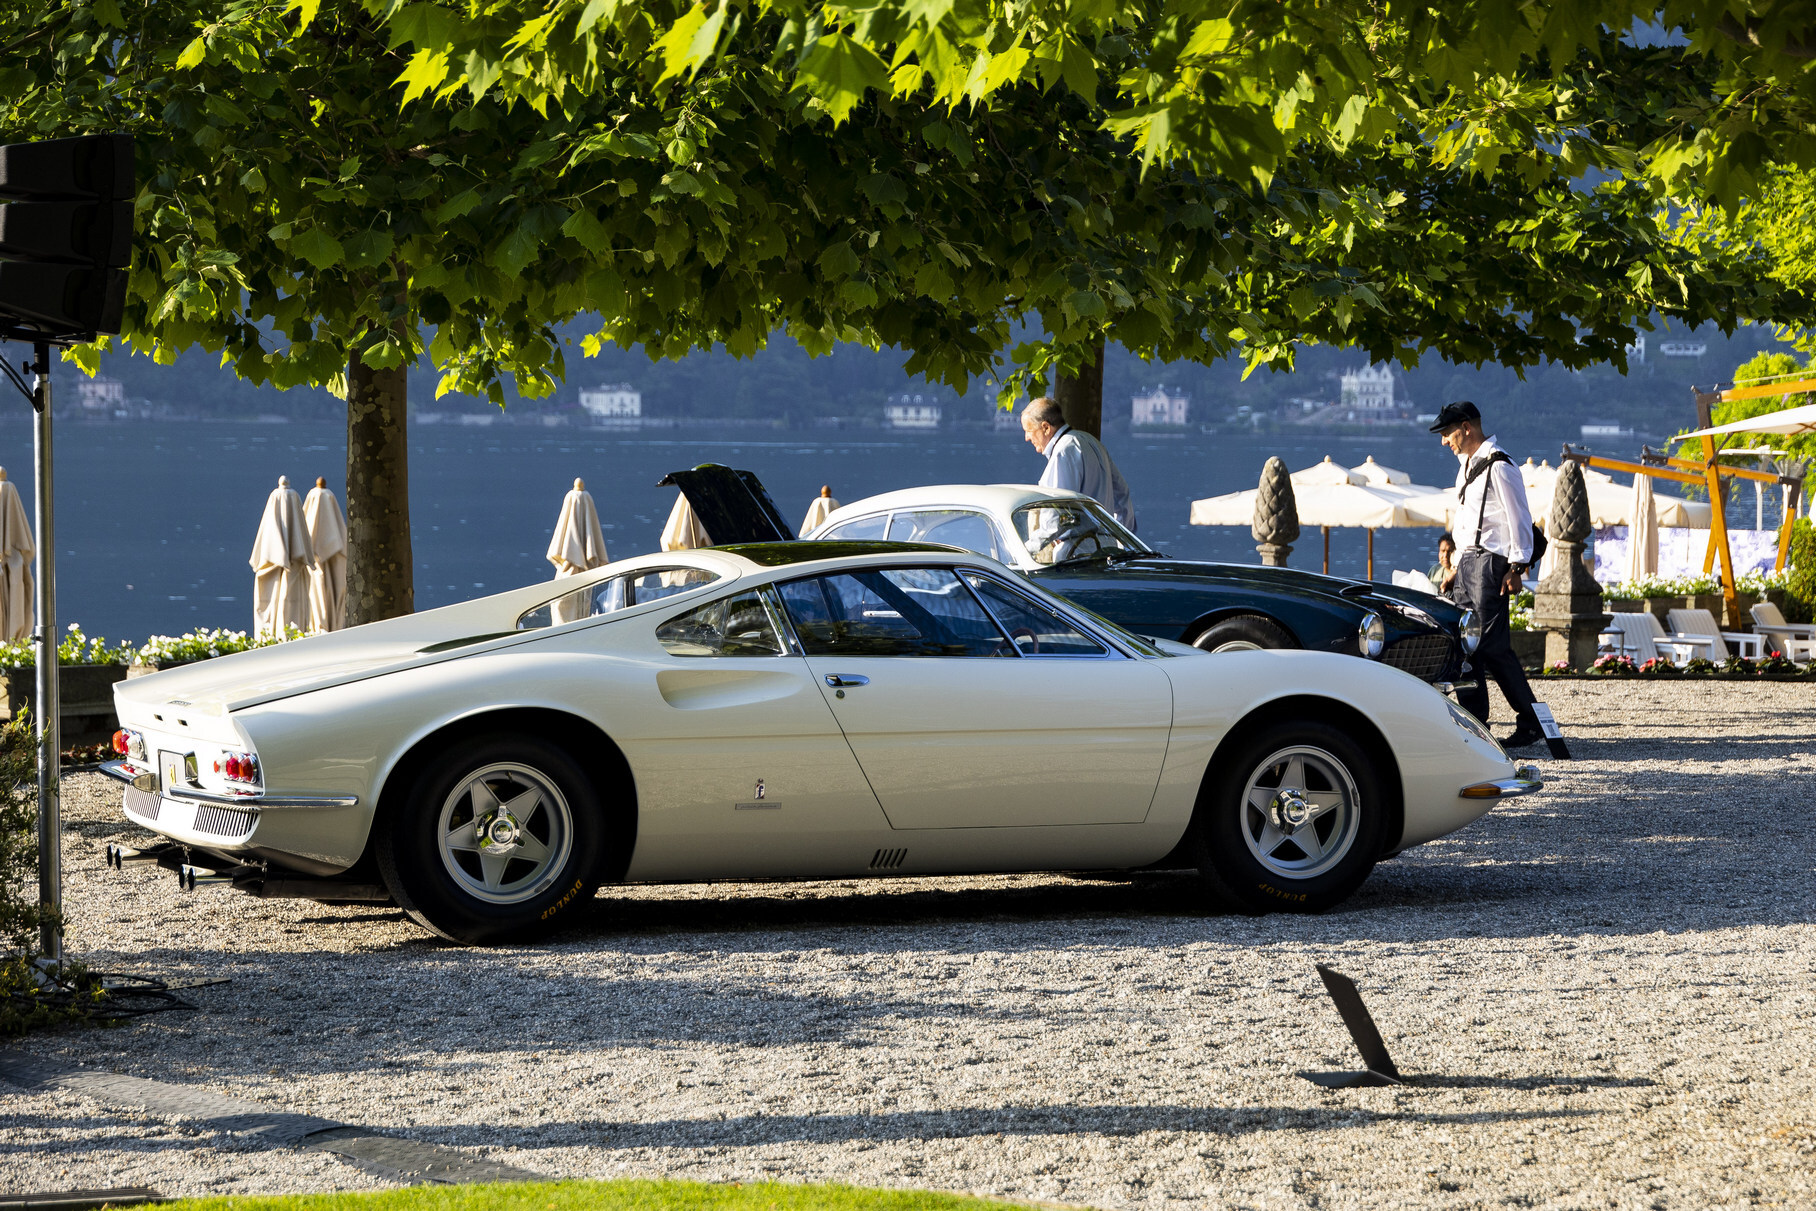 Кузов ателье Pininfarina — работа легендарного дизайнера Альдо Бровароне. Внешность выполнена в духе концепт-кара 206 GT Speciale 1965 года и явно предвосхитила серийную модель Dino 246 GT. Но трёхместка намного крупнее их, ведь за кабиной стоит V12 4.4 конструкции Джоакино Коломбо мощностью 380 лошадиных сил от гоночного Ferrari 365 P2.